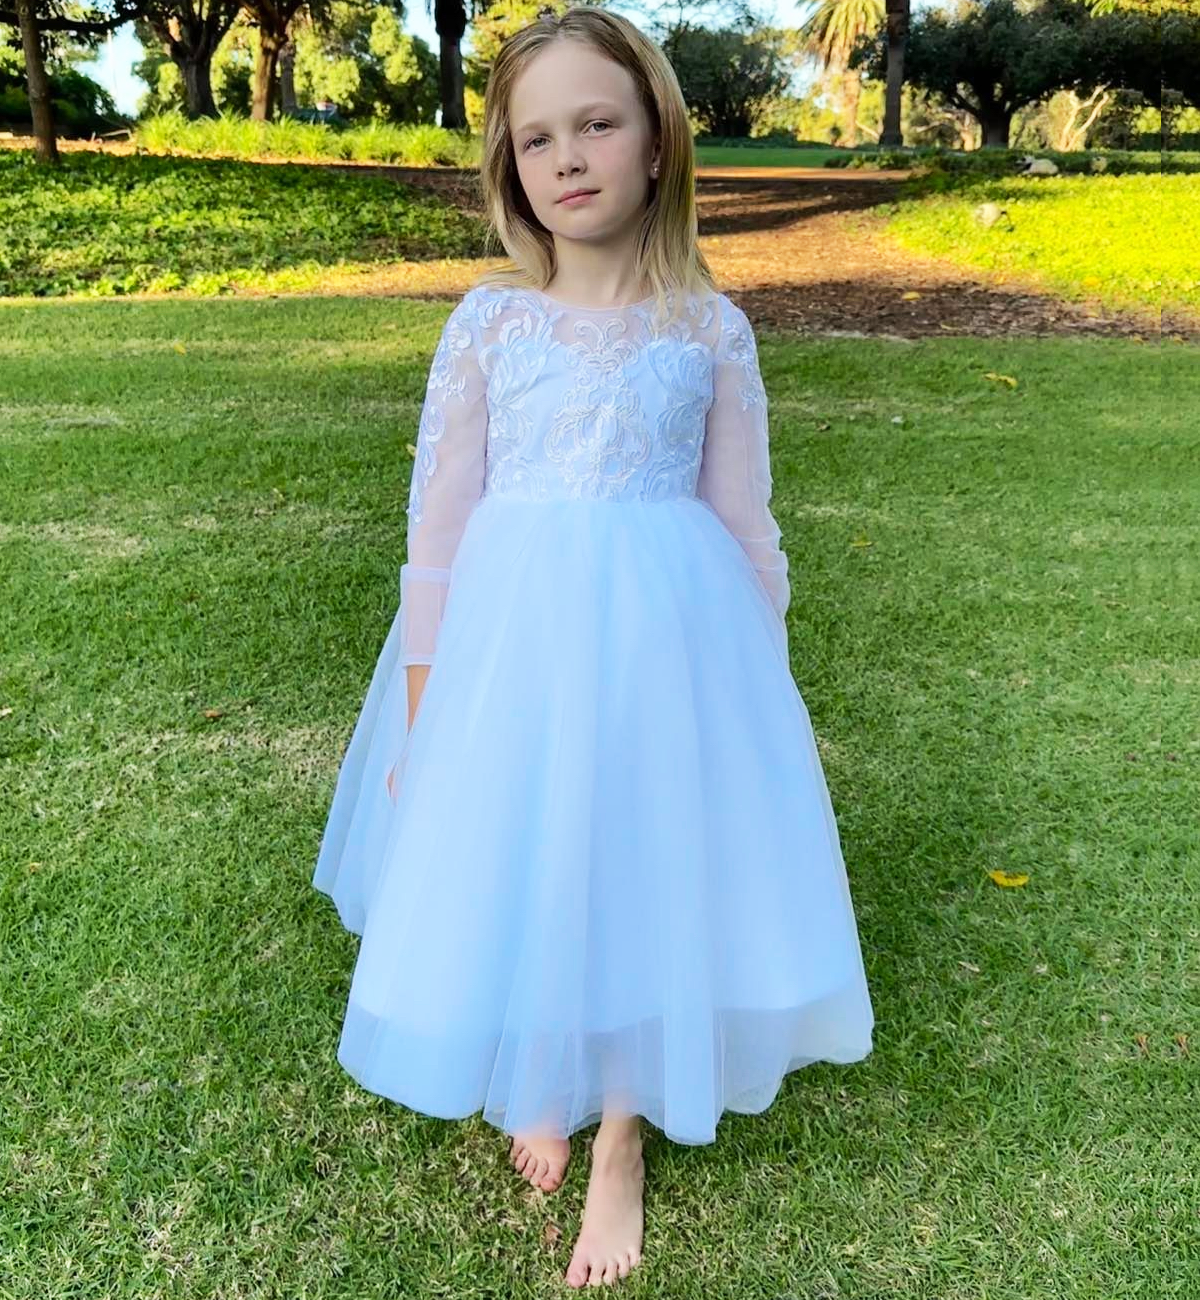 Violet in White - Flower Girl or Communion Dress